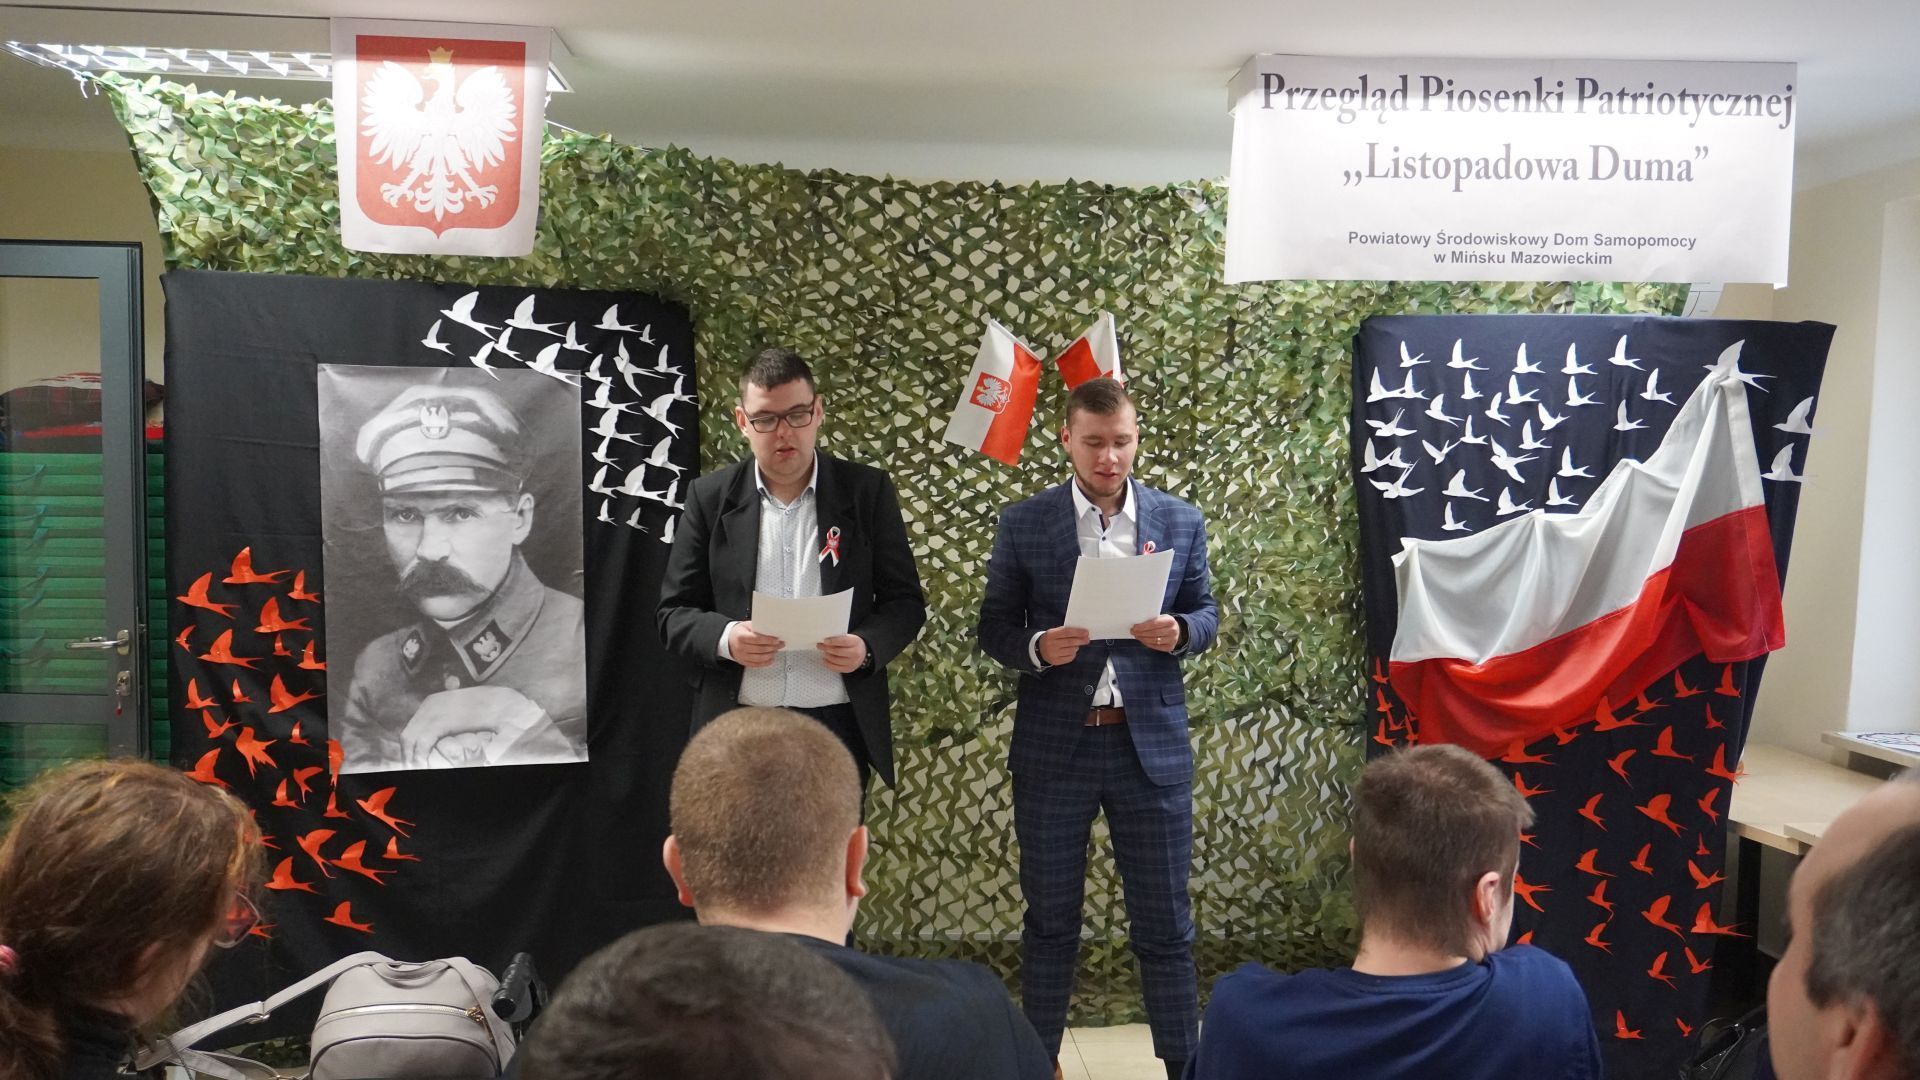 Uczestnicy Bartek i Karol zapowiadają występ podczas Przeglądu Piosenki Patriotycznej ''Listopadowa Duma''.